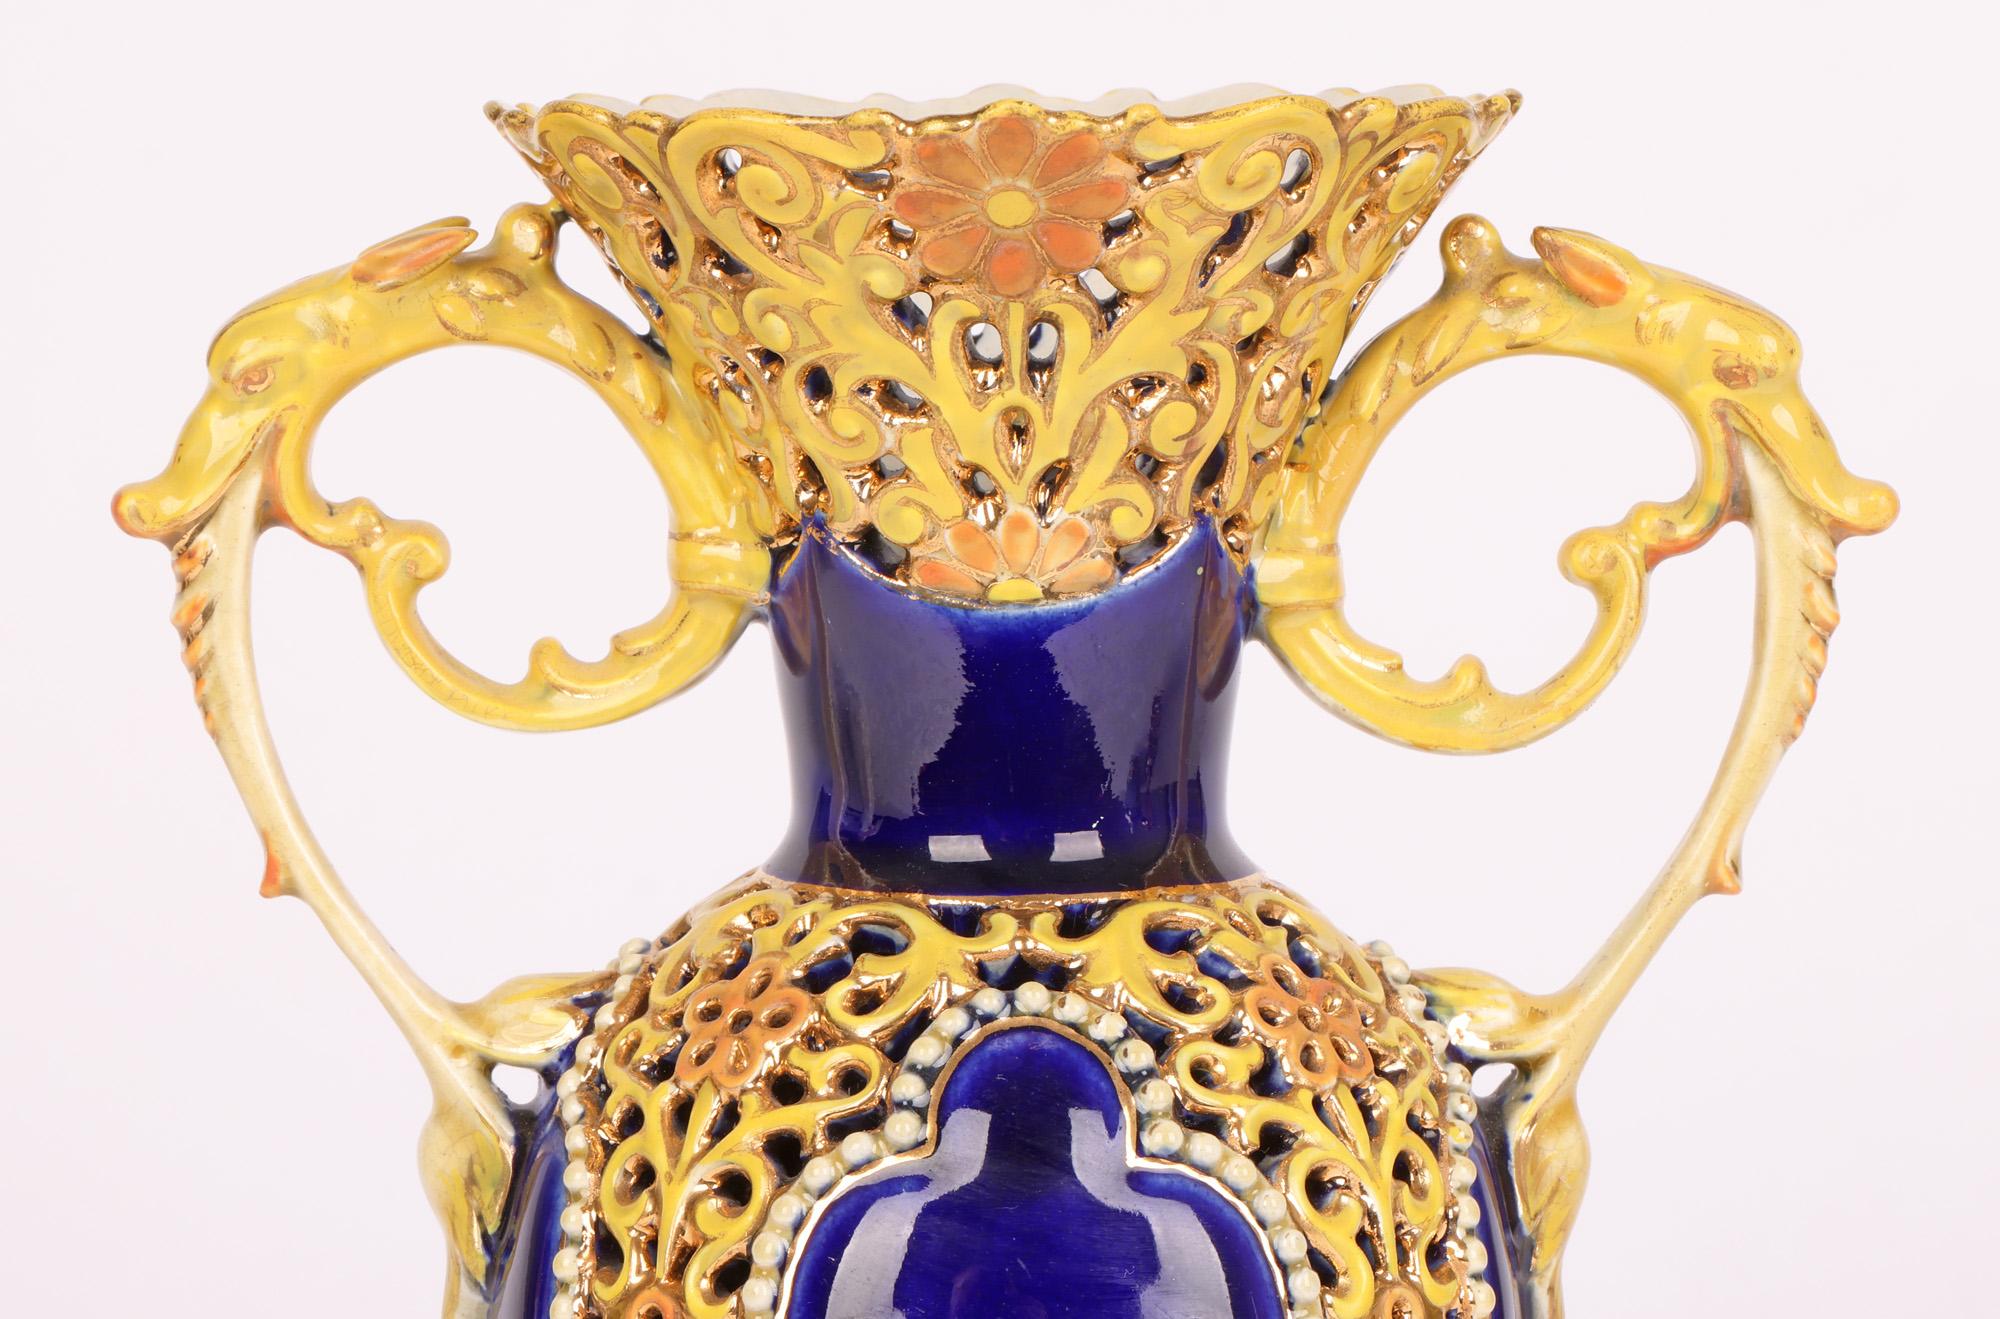 Très beau et élégant vase à deux anses en porcelaine hongroise, avec des motifs floraux réticulés et des panneaux contrastés en glaçure bleue, réalisé par le célèbre fabricant Zsolnay et datant d'environ 1890. Le vase repose sur un pied rond en